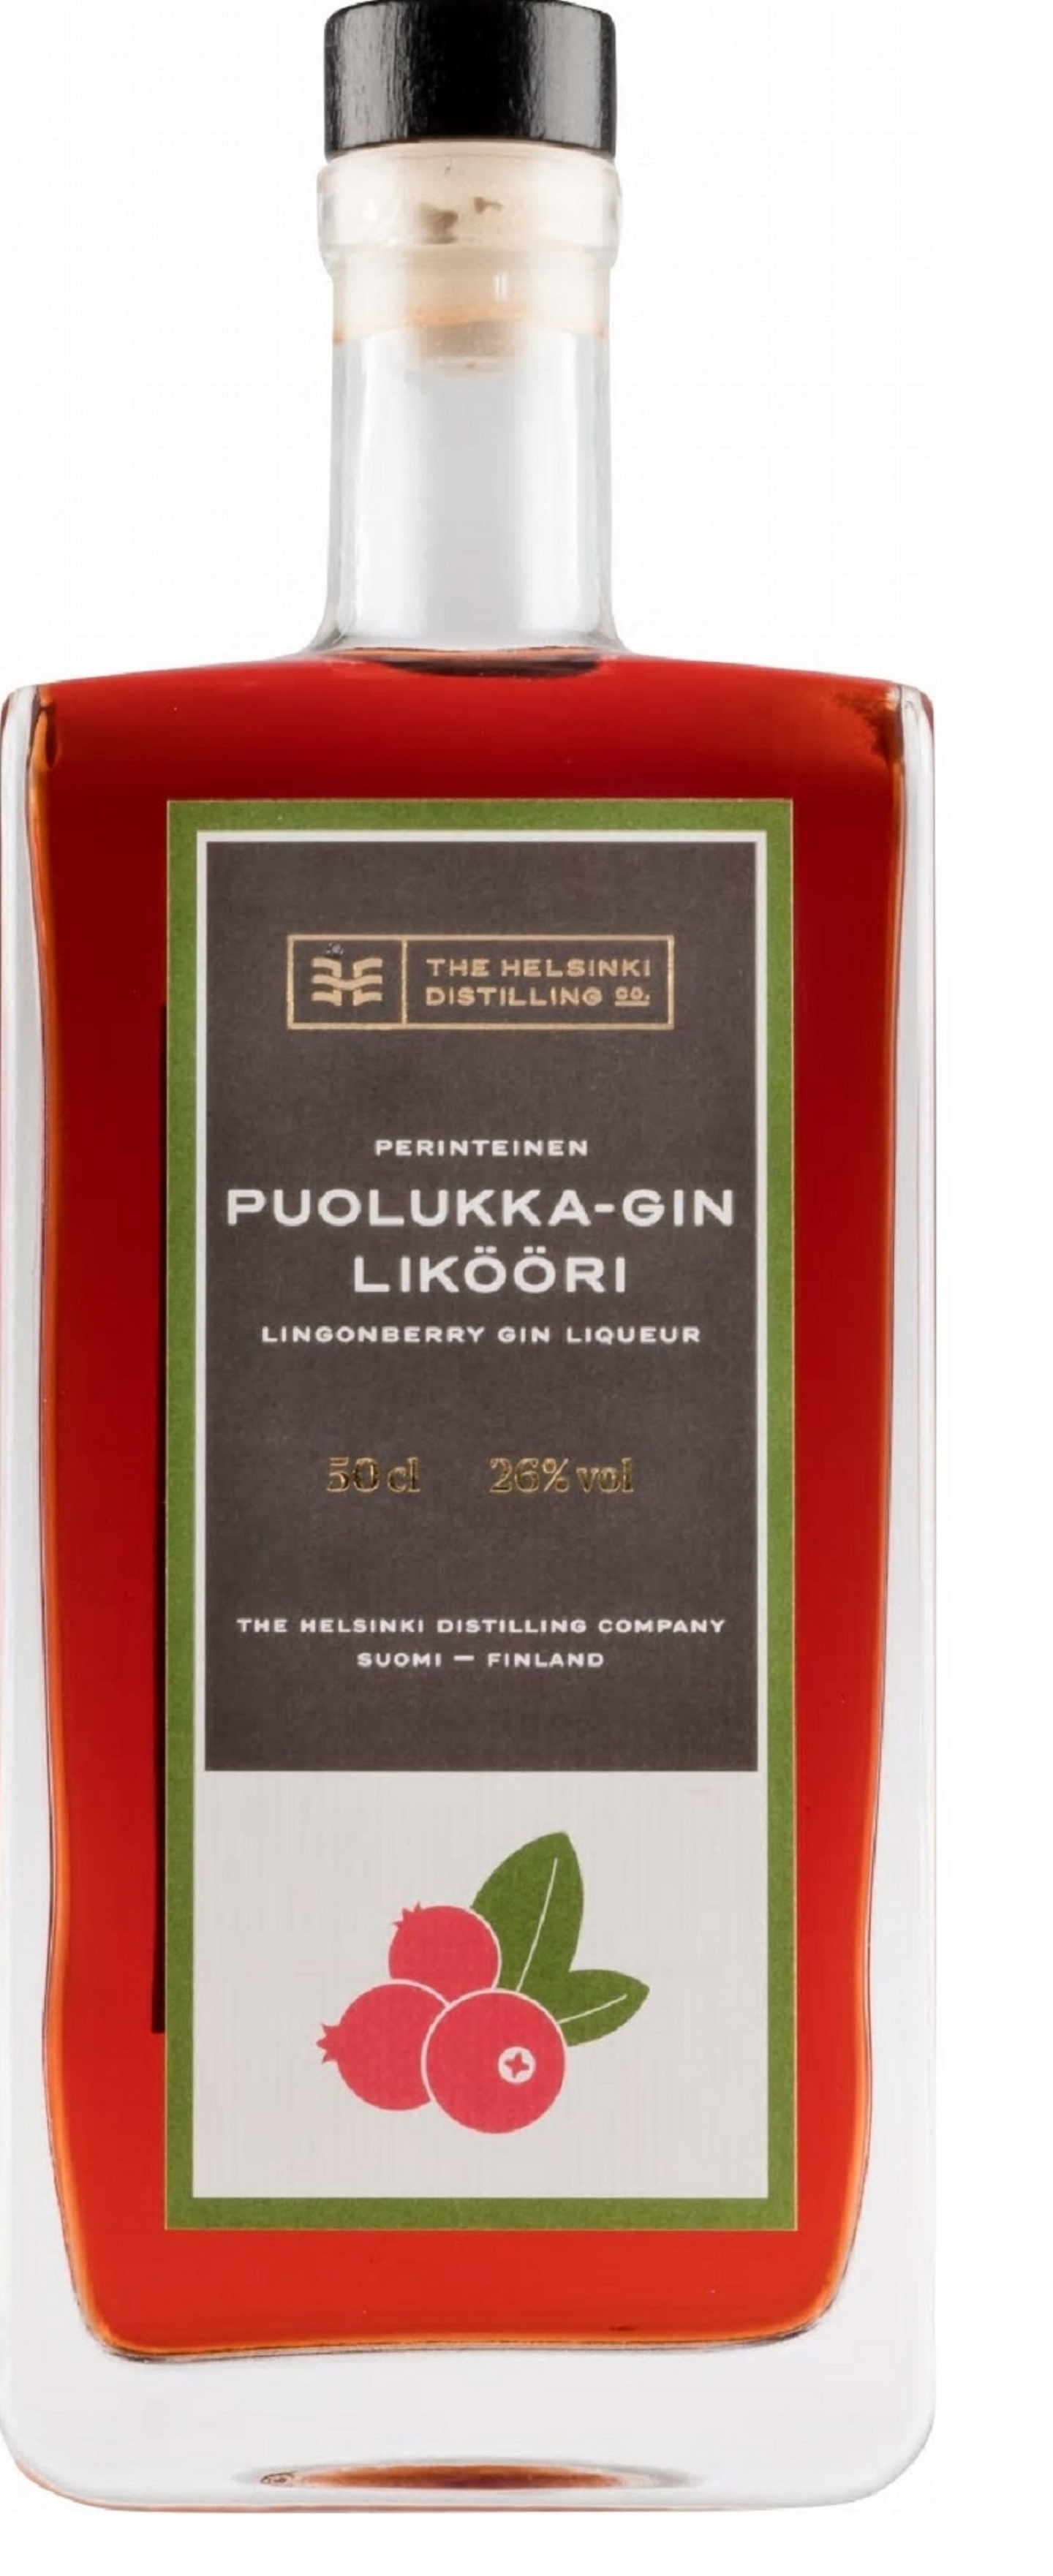 Helsinki perinteinen puolukka - gin likööri 50cl 26%